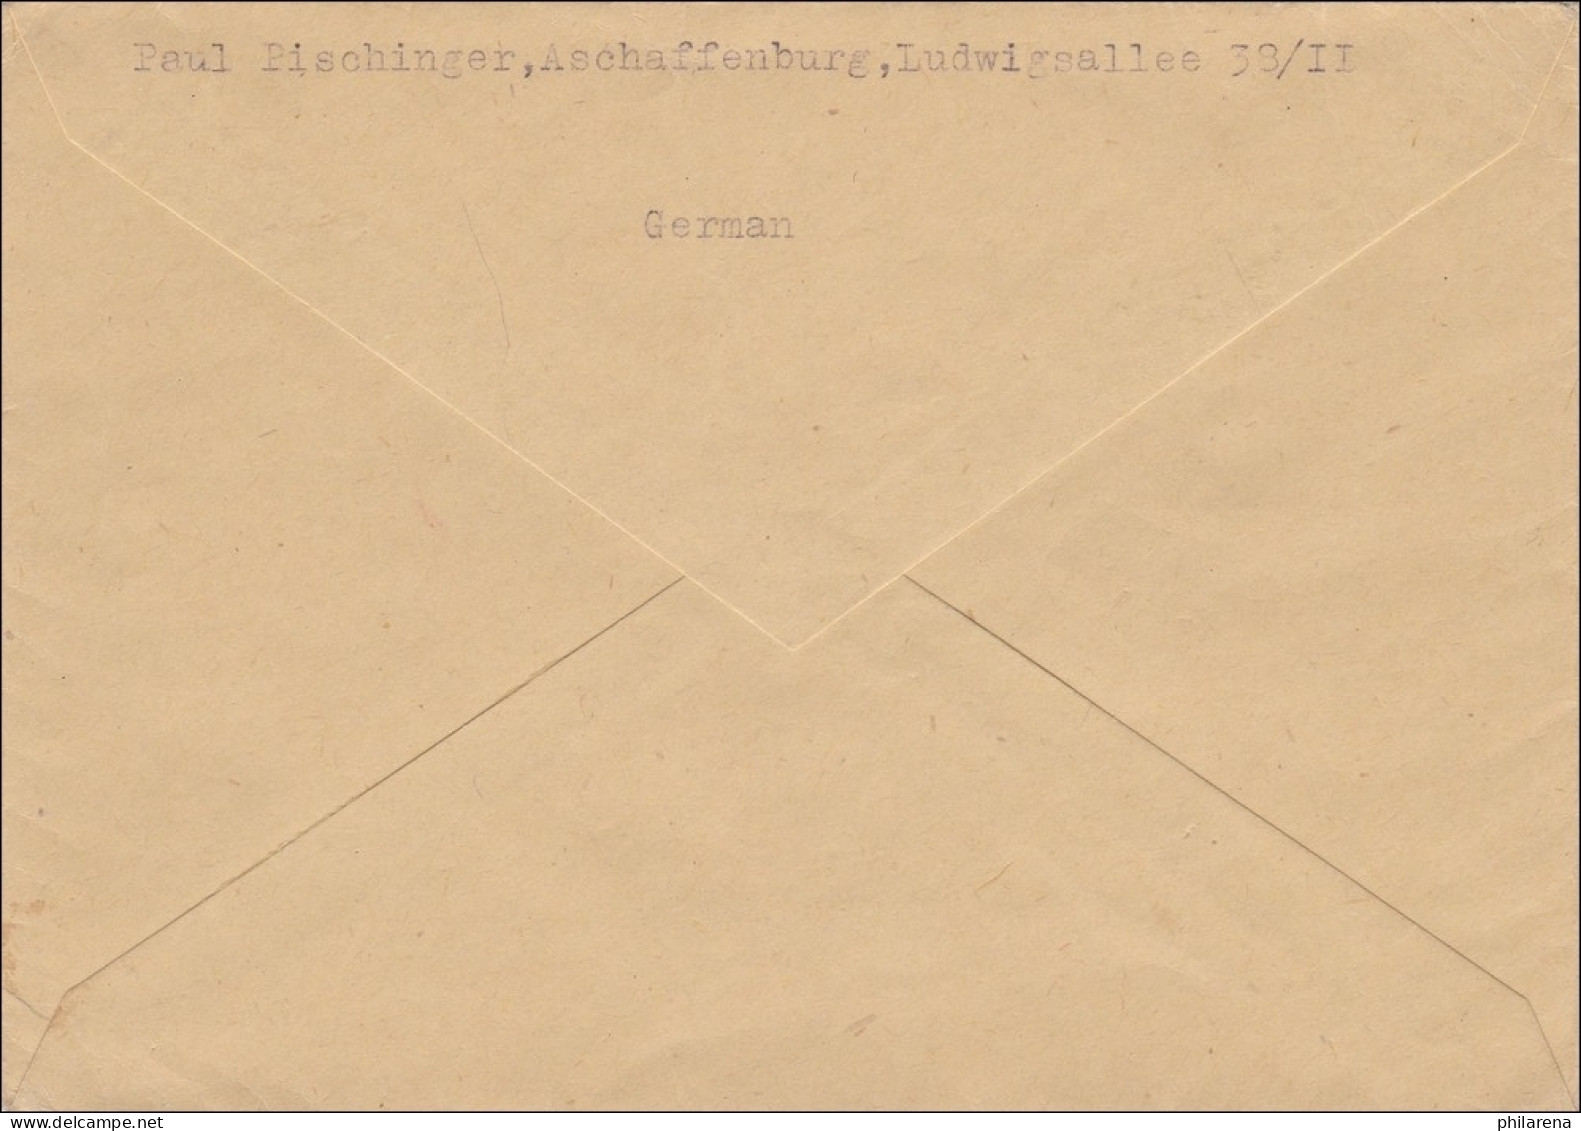 BiZone:  Eilbotenbrief Von Aschaffenburg Nach Landshut 1946 - Lettres & Documents